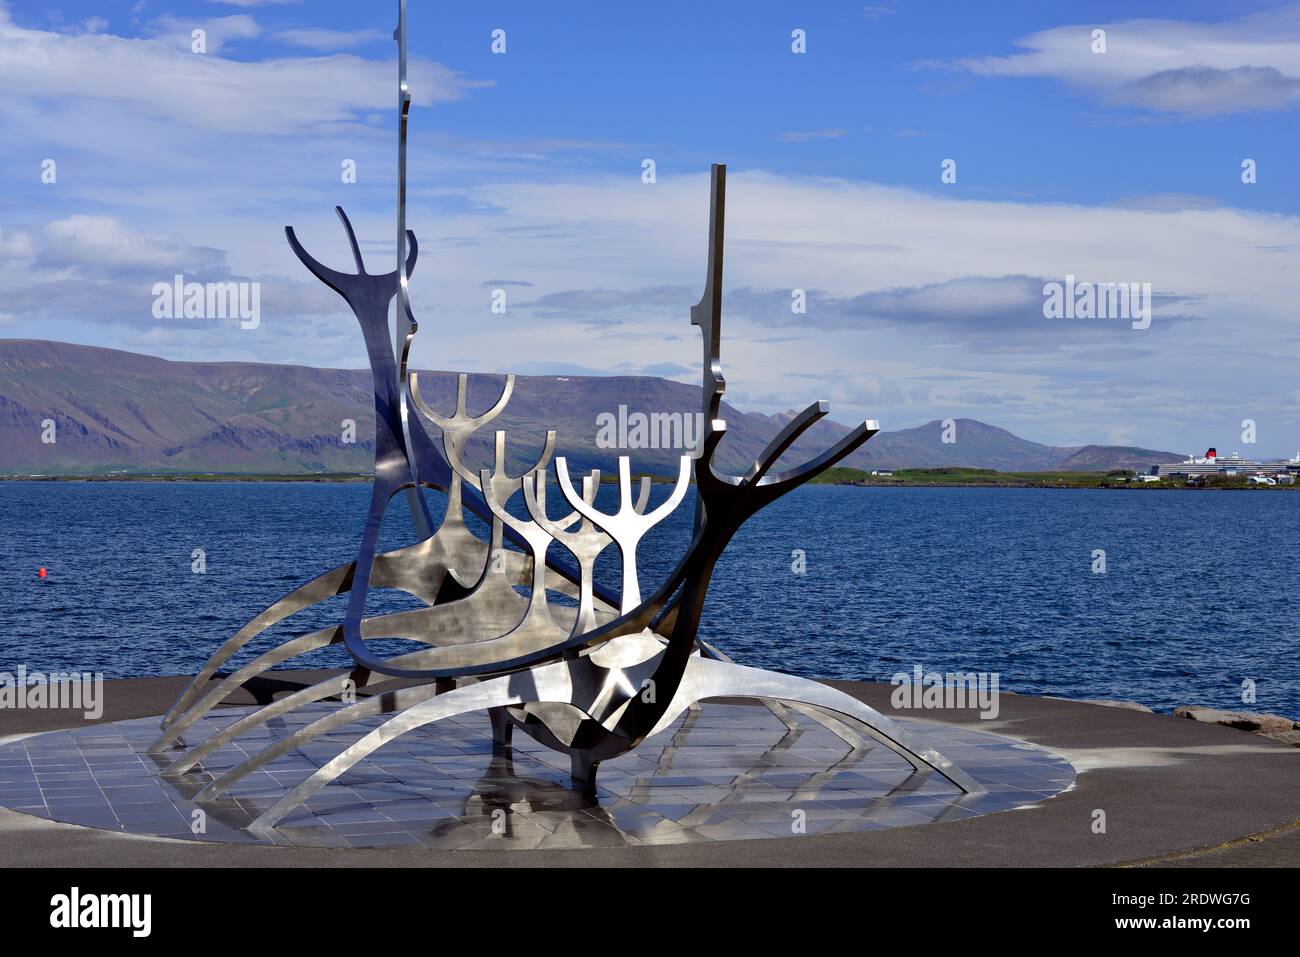 Edelstahlskulptur eines Wikingerschiffs, bekannt als Sun Voyager in Reykjavik Island. Videyjarstofa House kann man in der Ferne sehen. Stockfoto